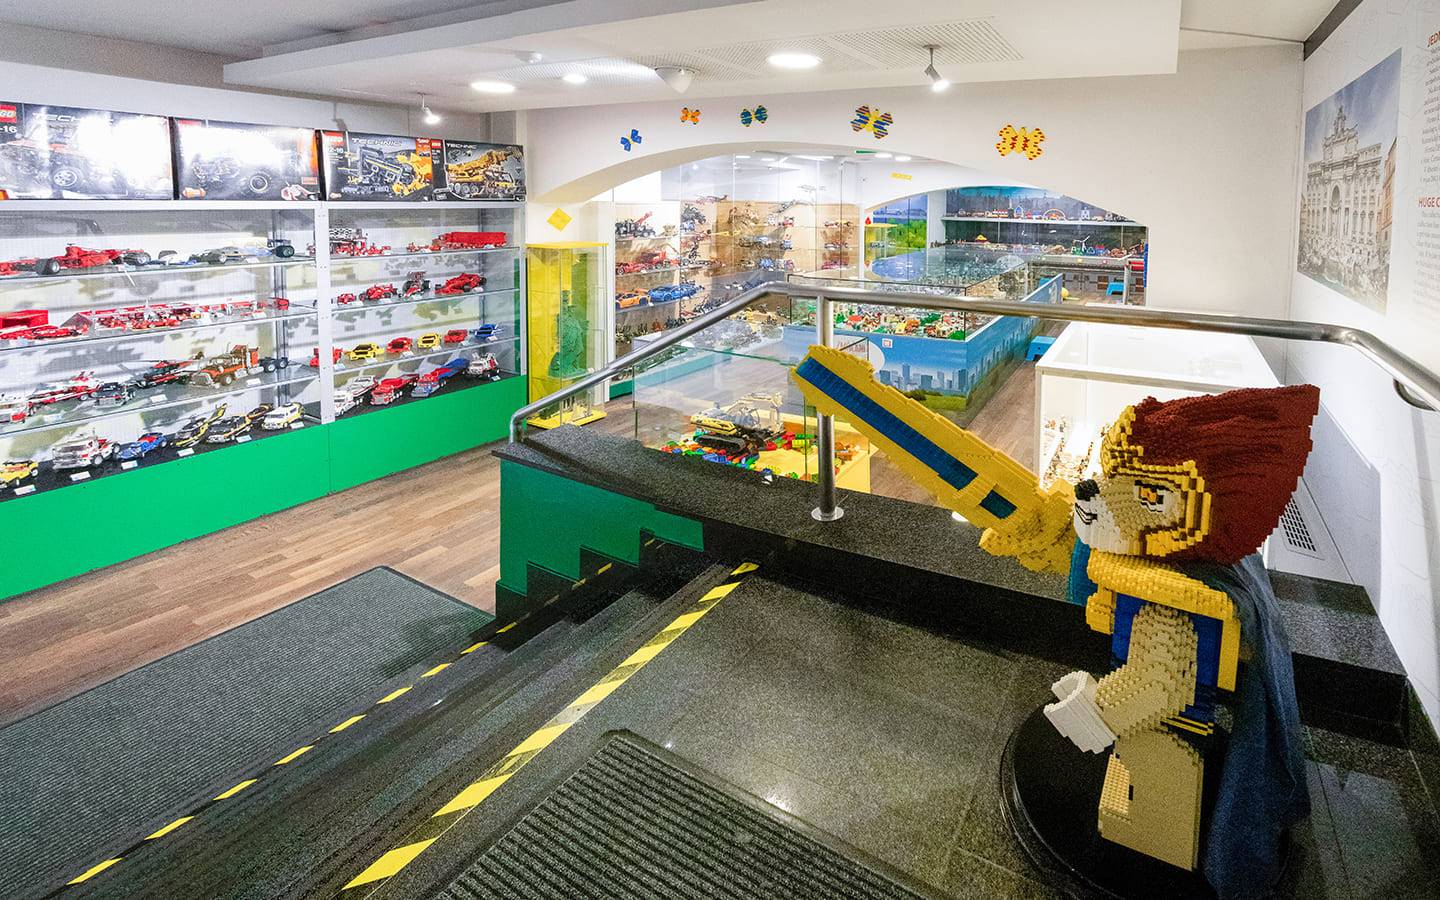 Музей лего в праге